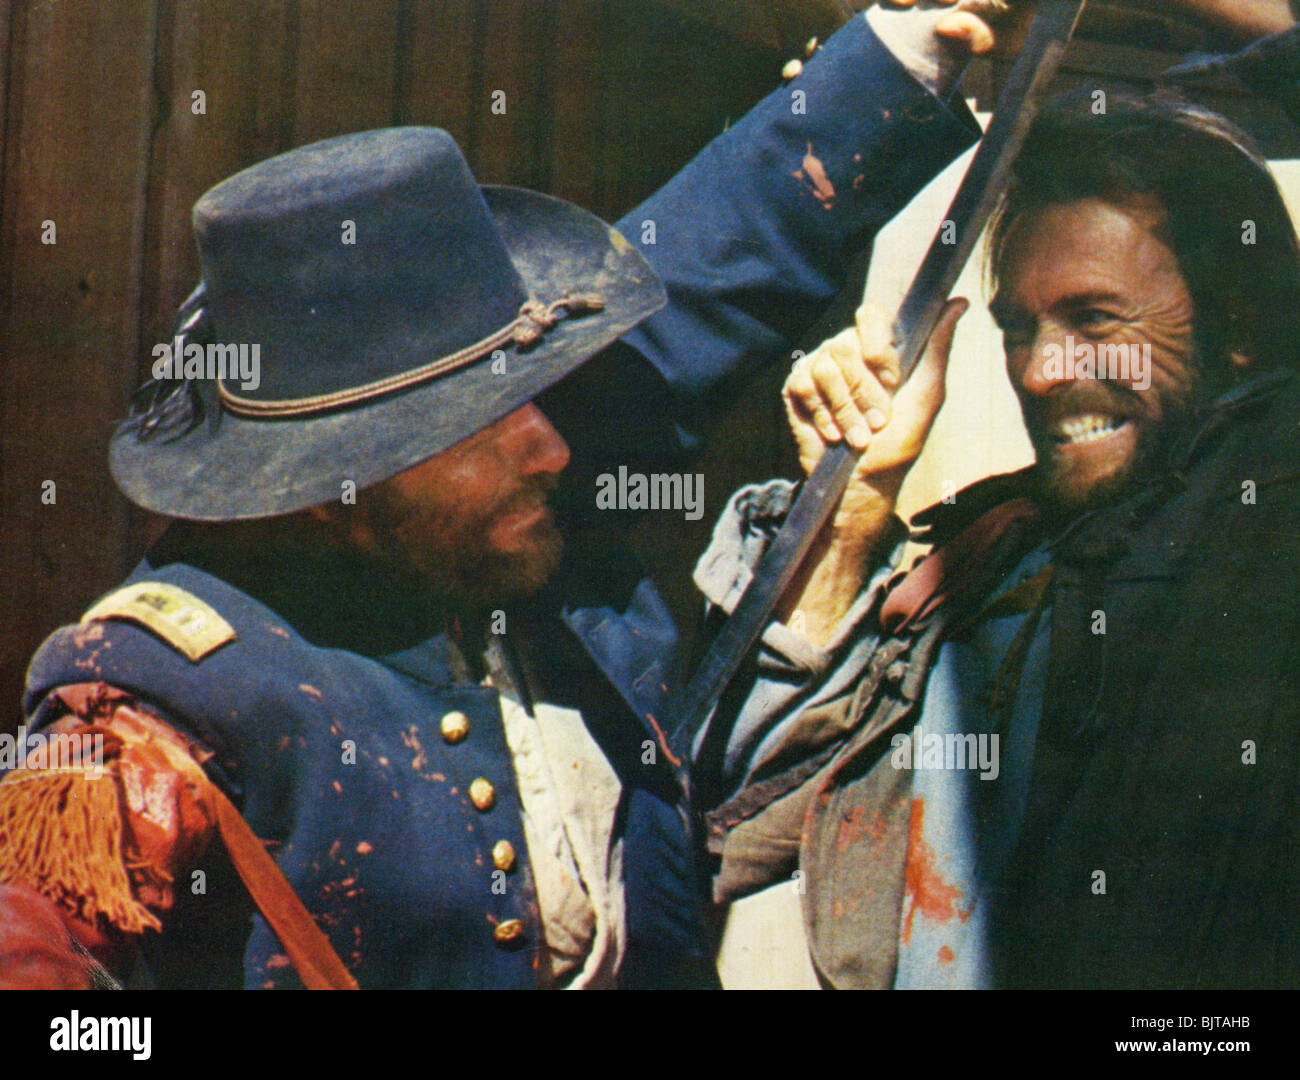 L'Outlaw Josey Wales - 1976 Warner/Malpaso film con Clint Eastwood a destra Foto Stock